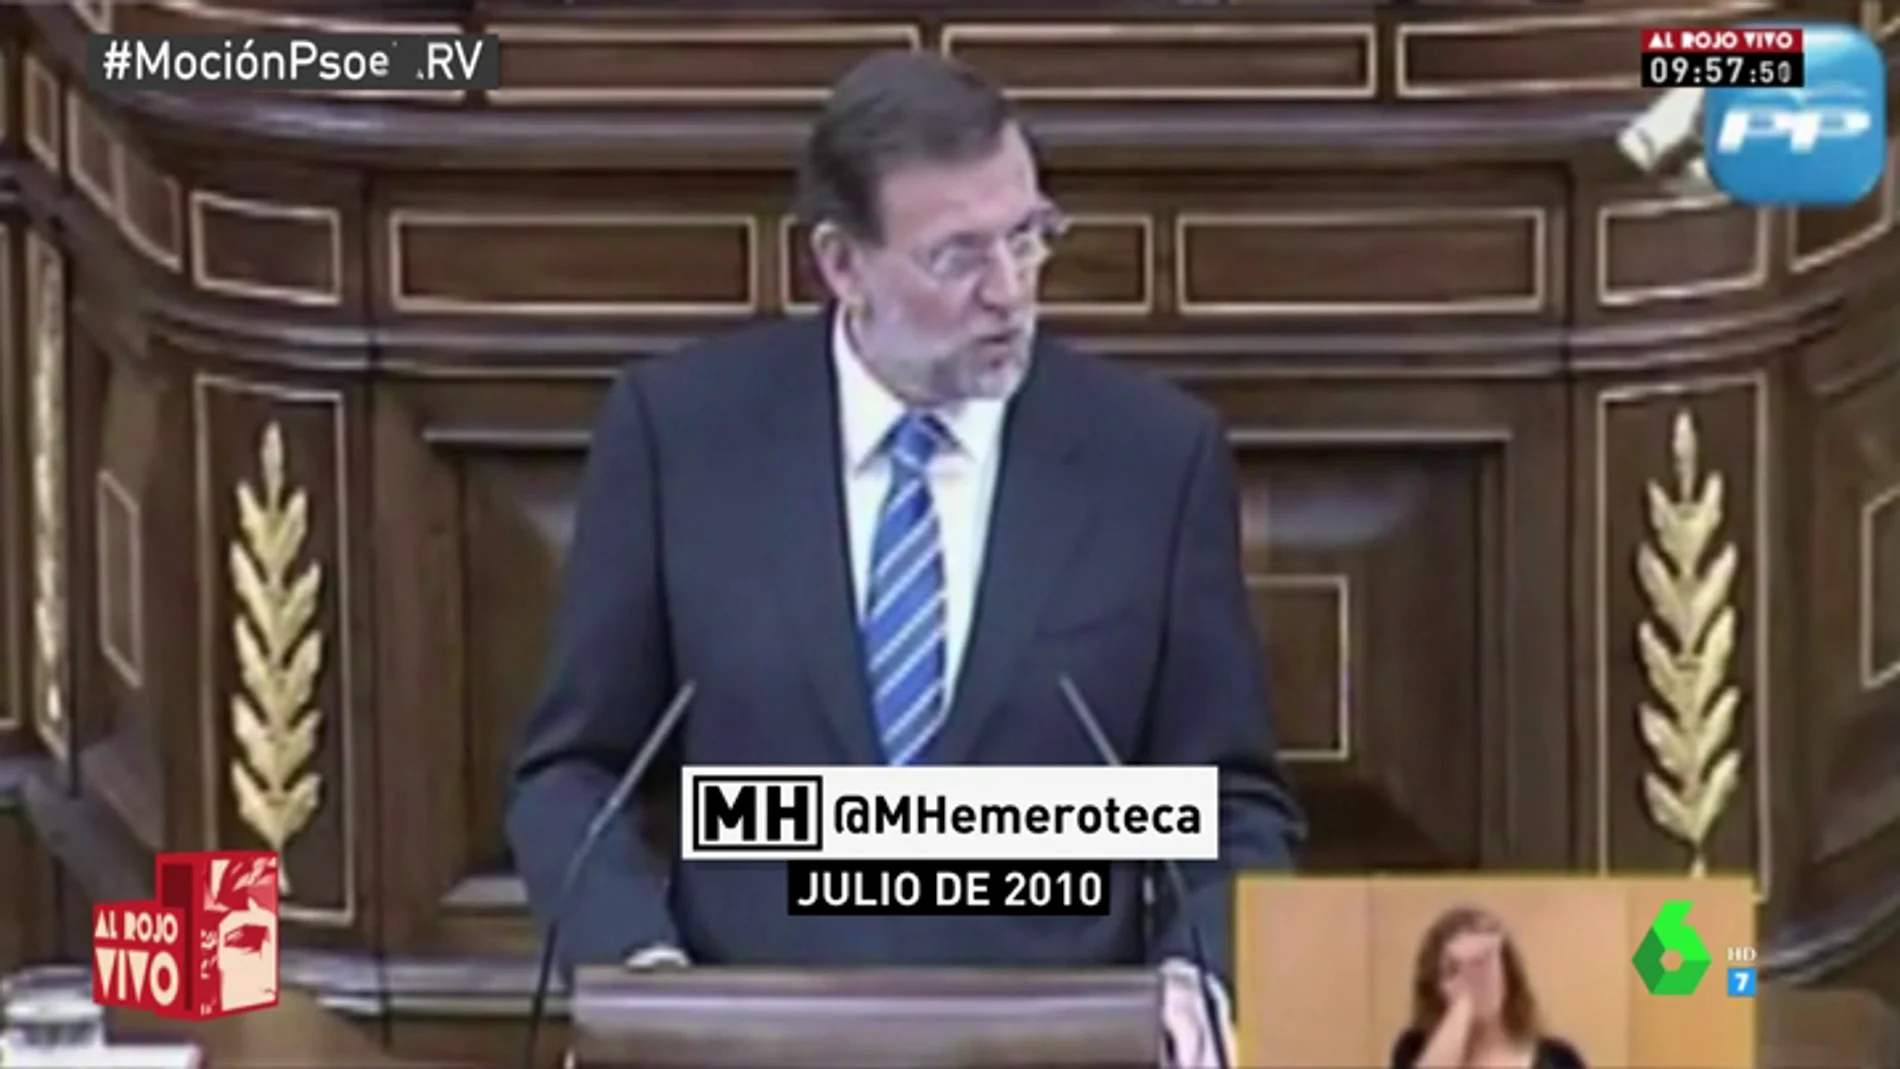 Maldita Hemeroteca: Rajoy dice que no le gustan los adelantos electorales, pero no pensaba lo mismo en 2011 